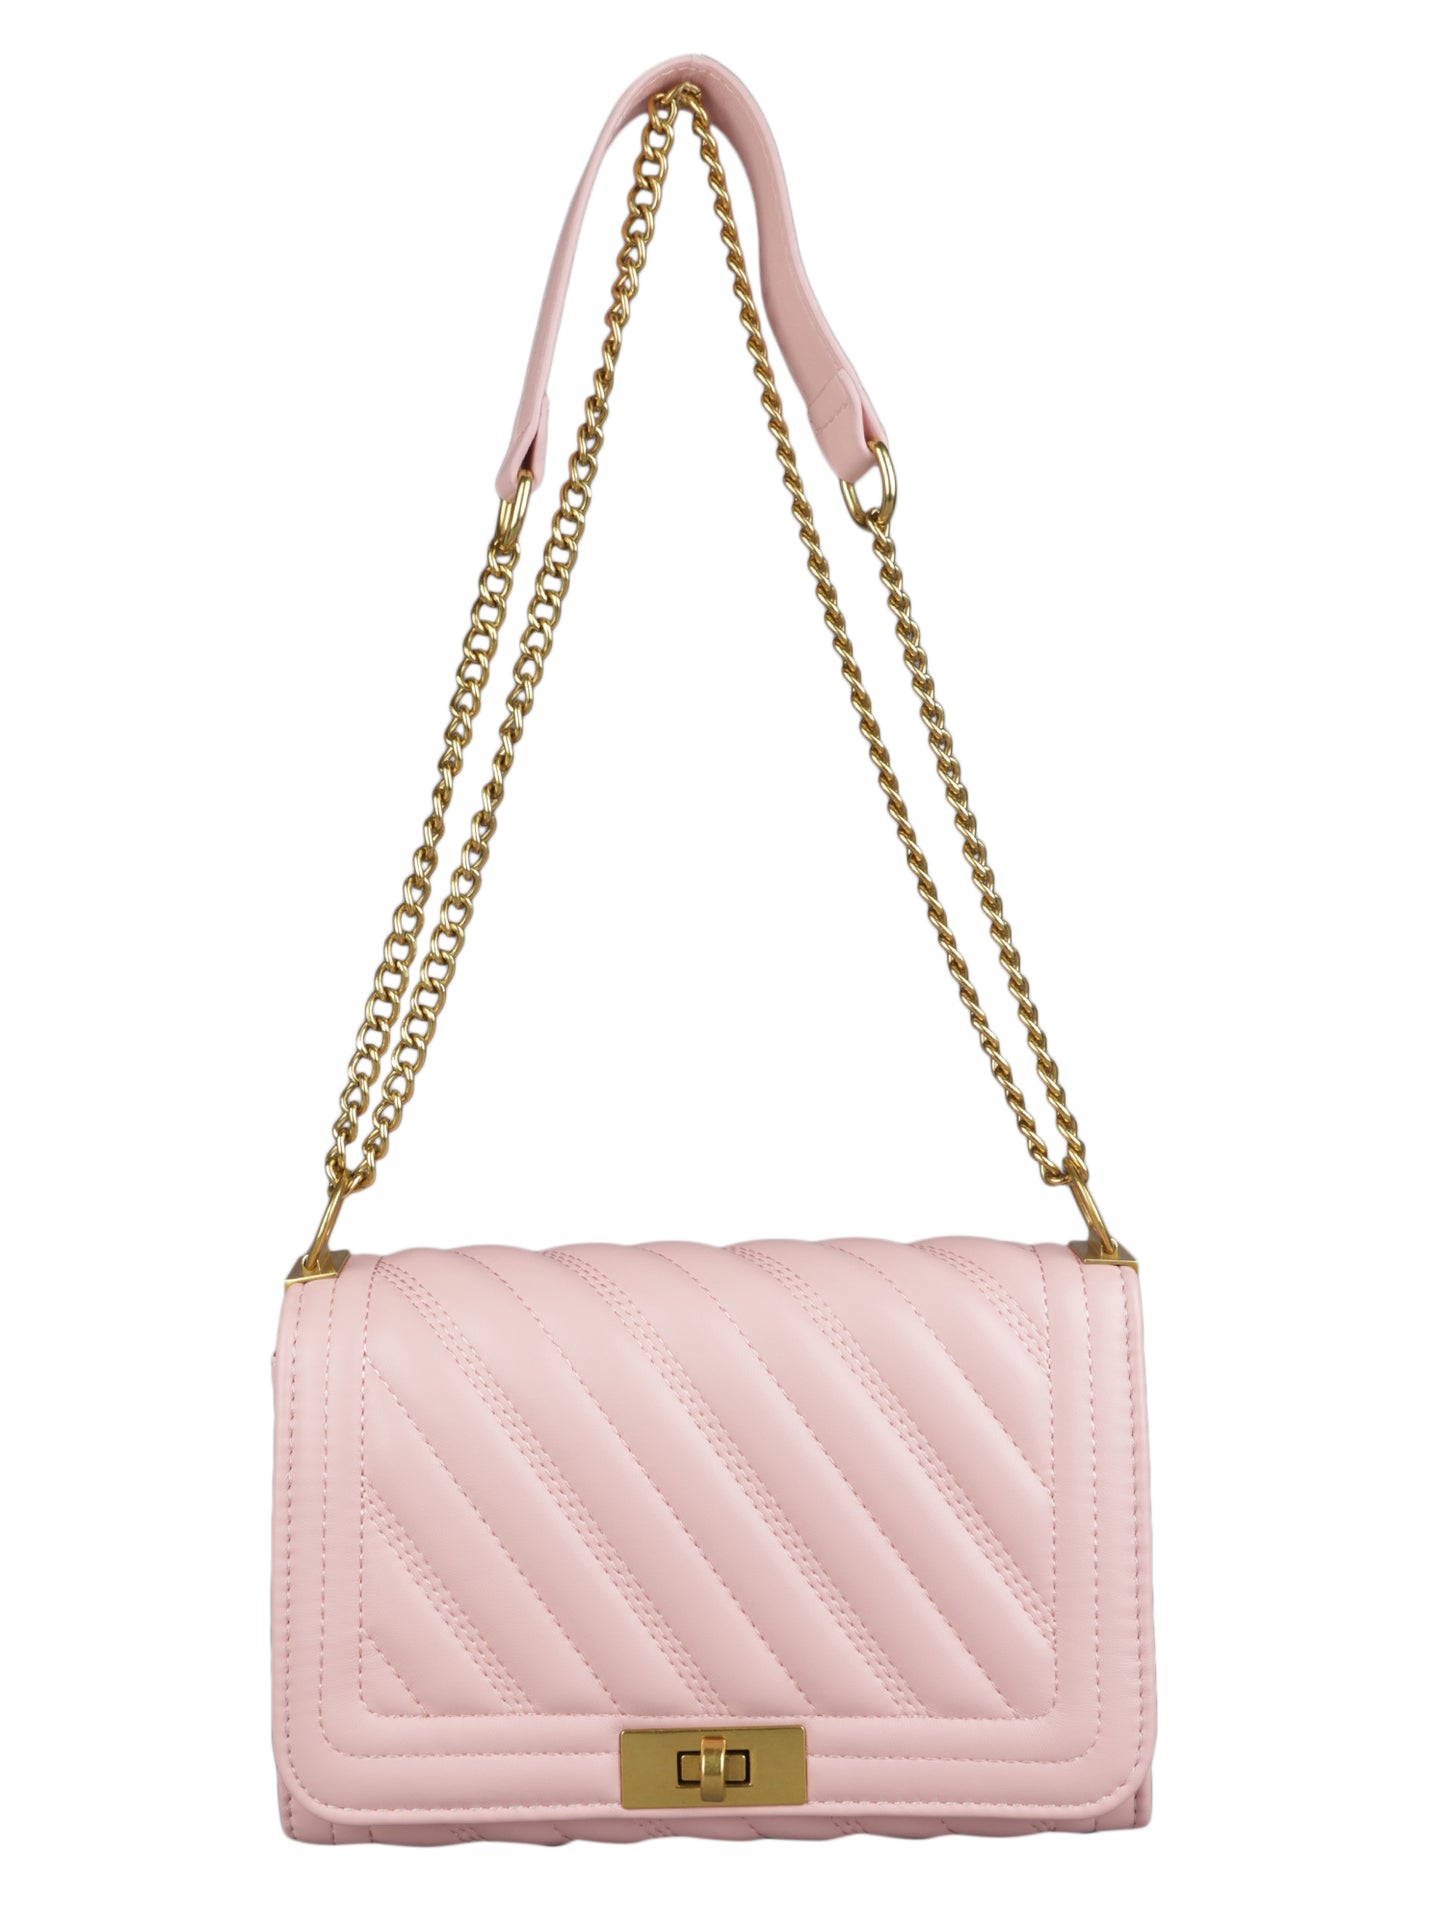 MINI WESST Women's Pink Handbags(MWHB022PK)